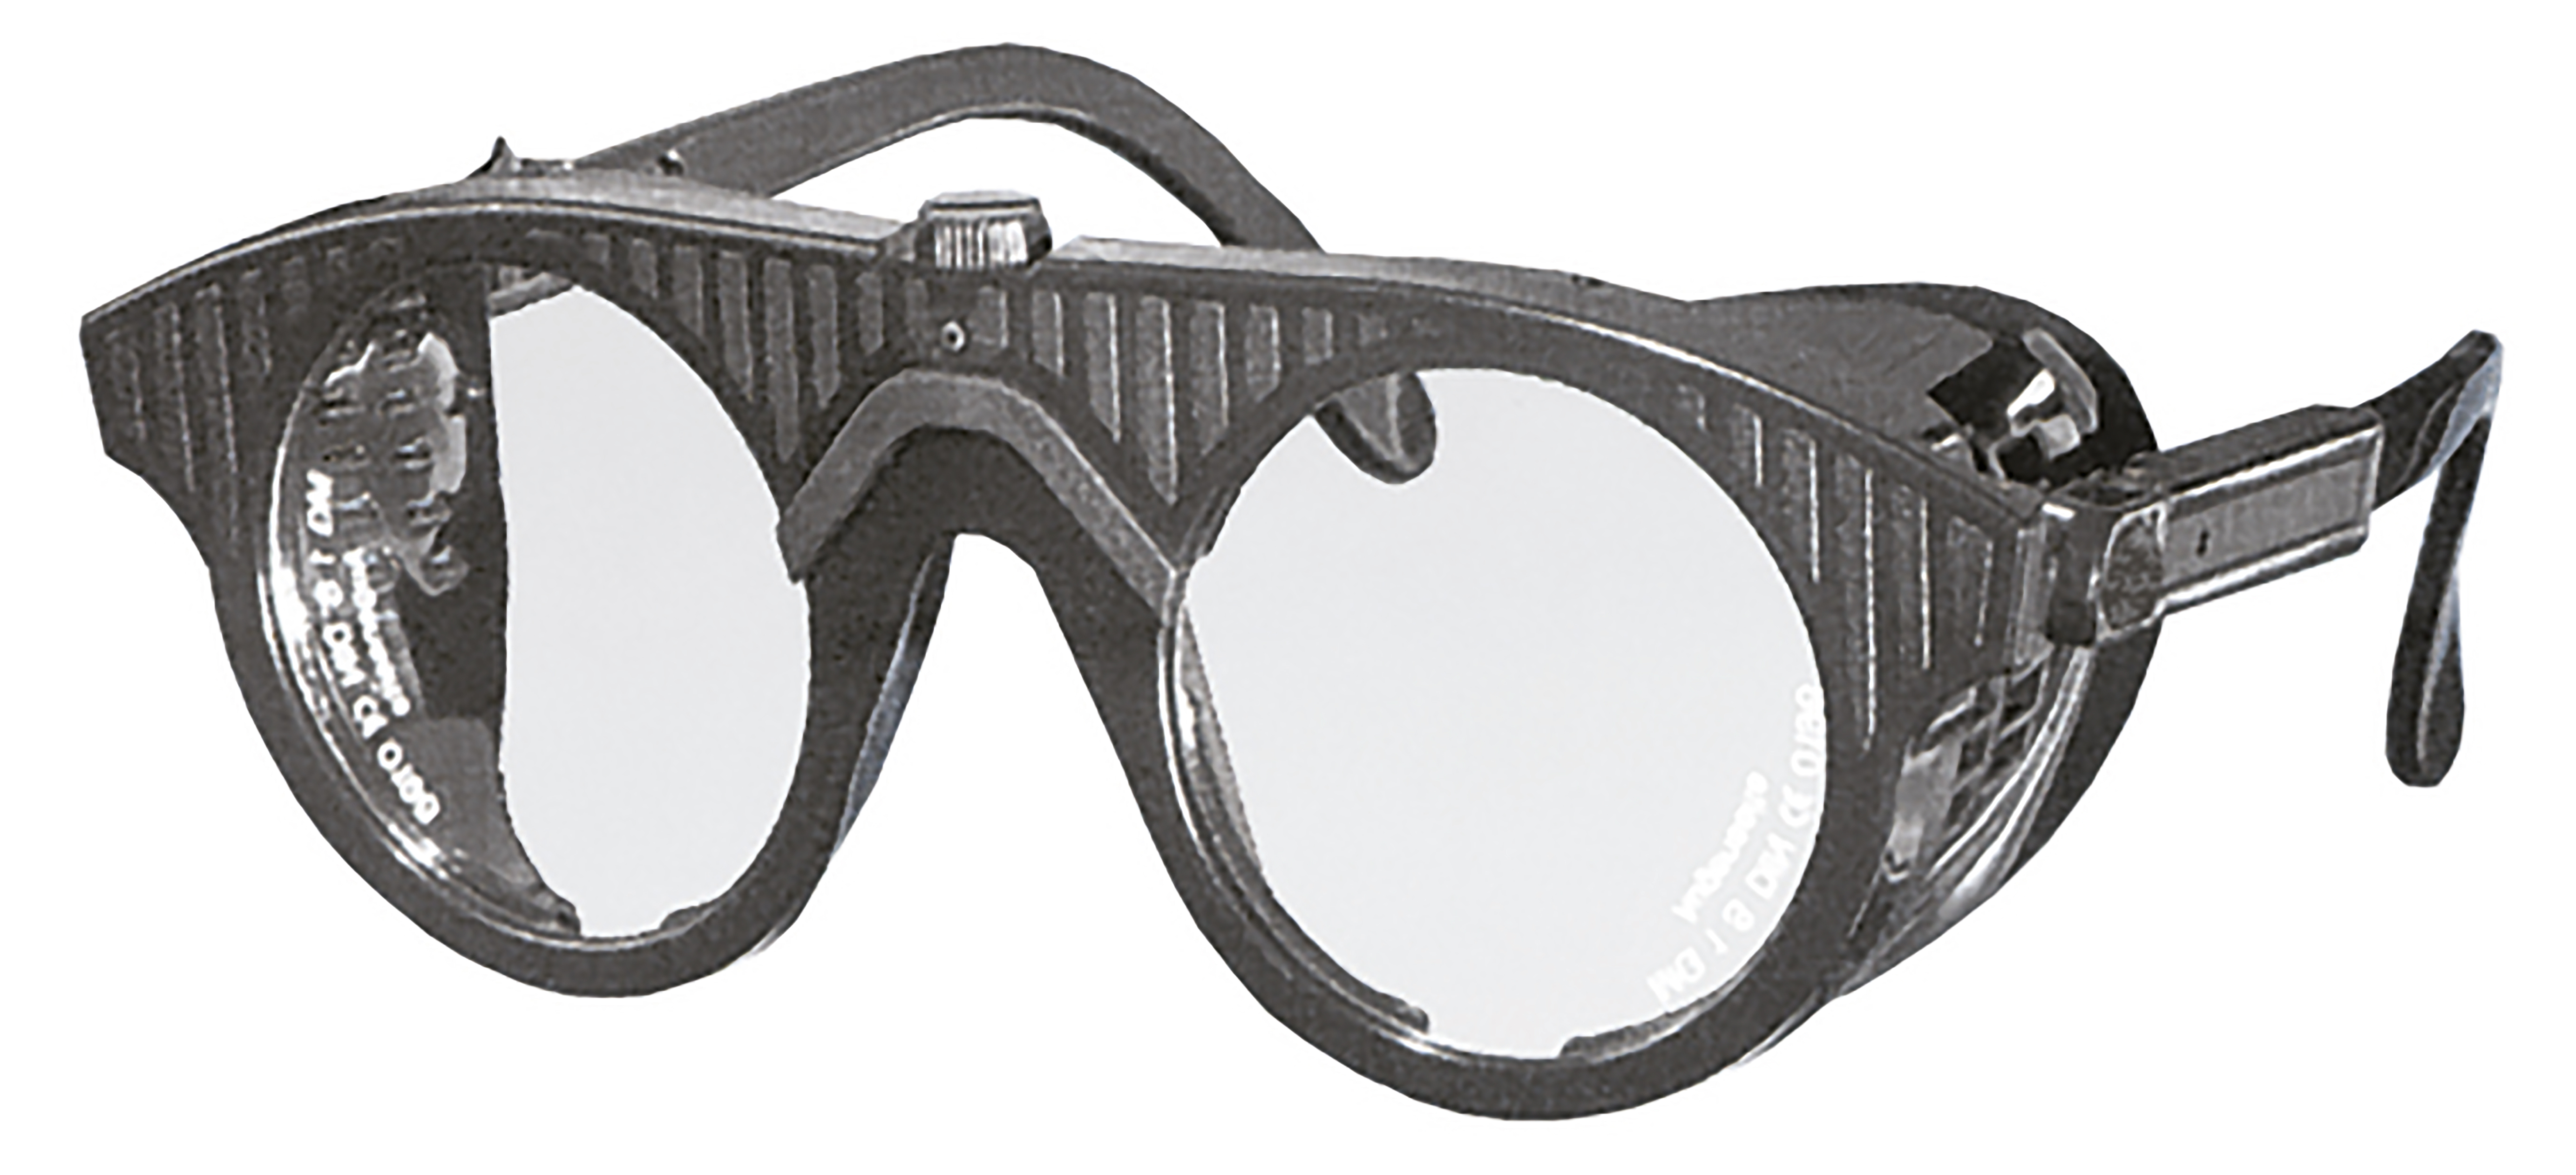 Nylonbrille, schwarz, mit Mittelschraube, Gläser rund Ø 50mm, farblos splitterfrei